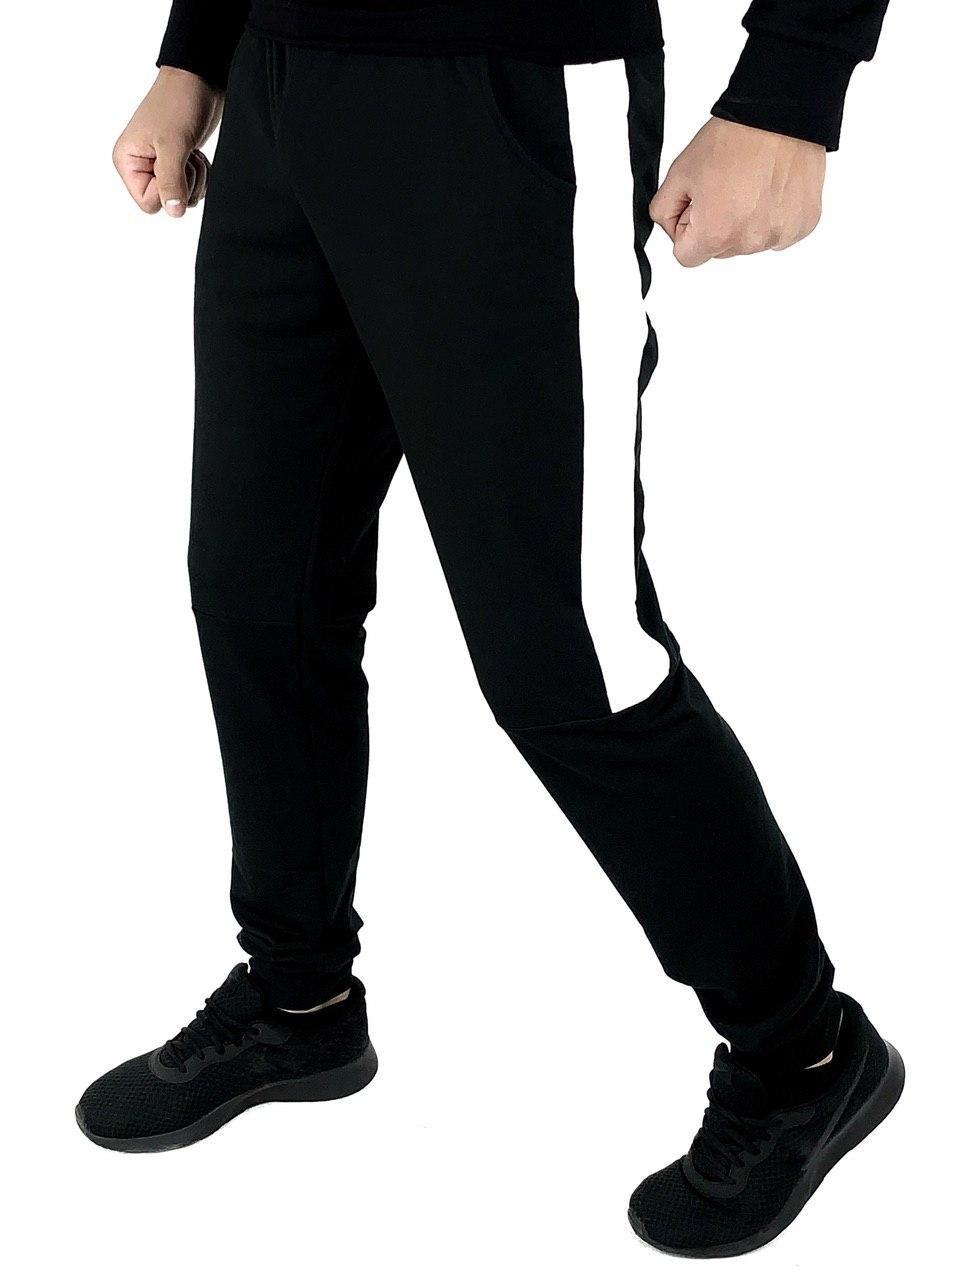 Чоловічі спортивні штани Intruder Spirited чорний-білий